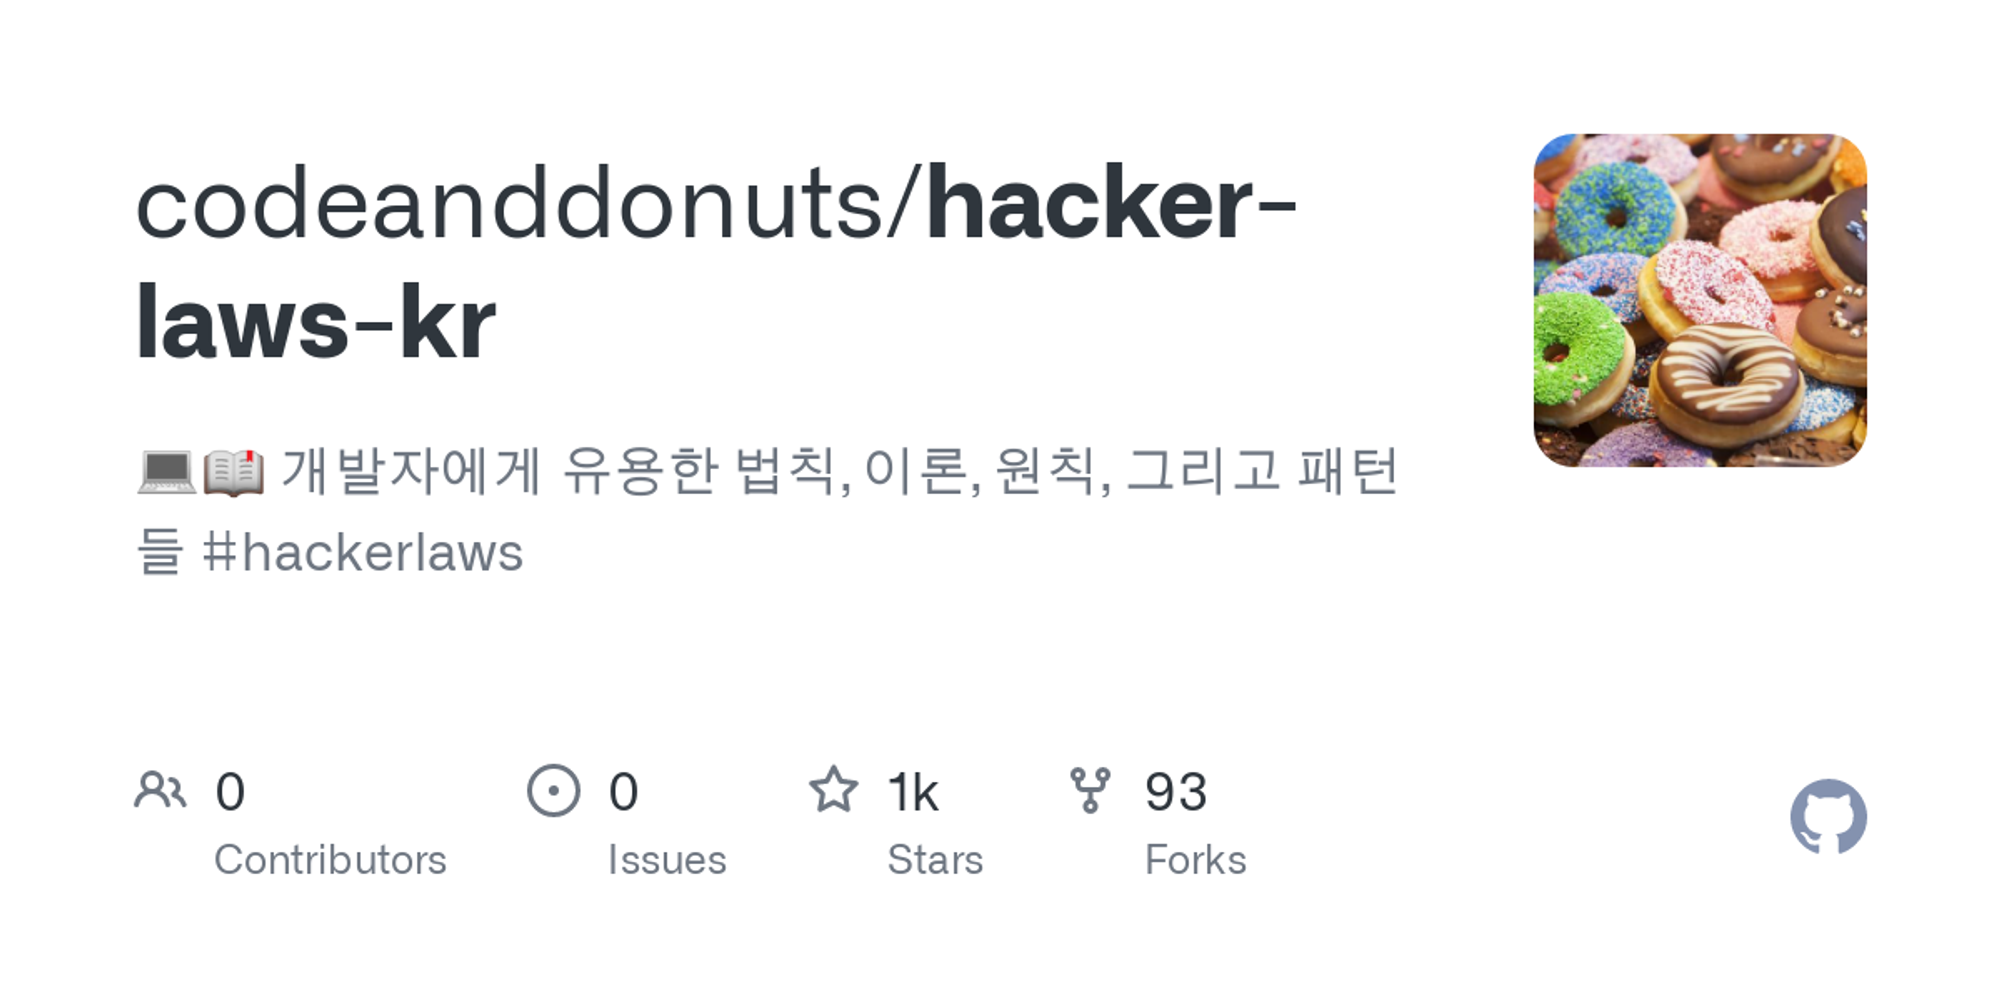 codeanddonuts/hacker-laws-kr